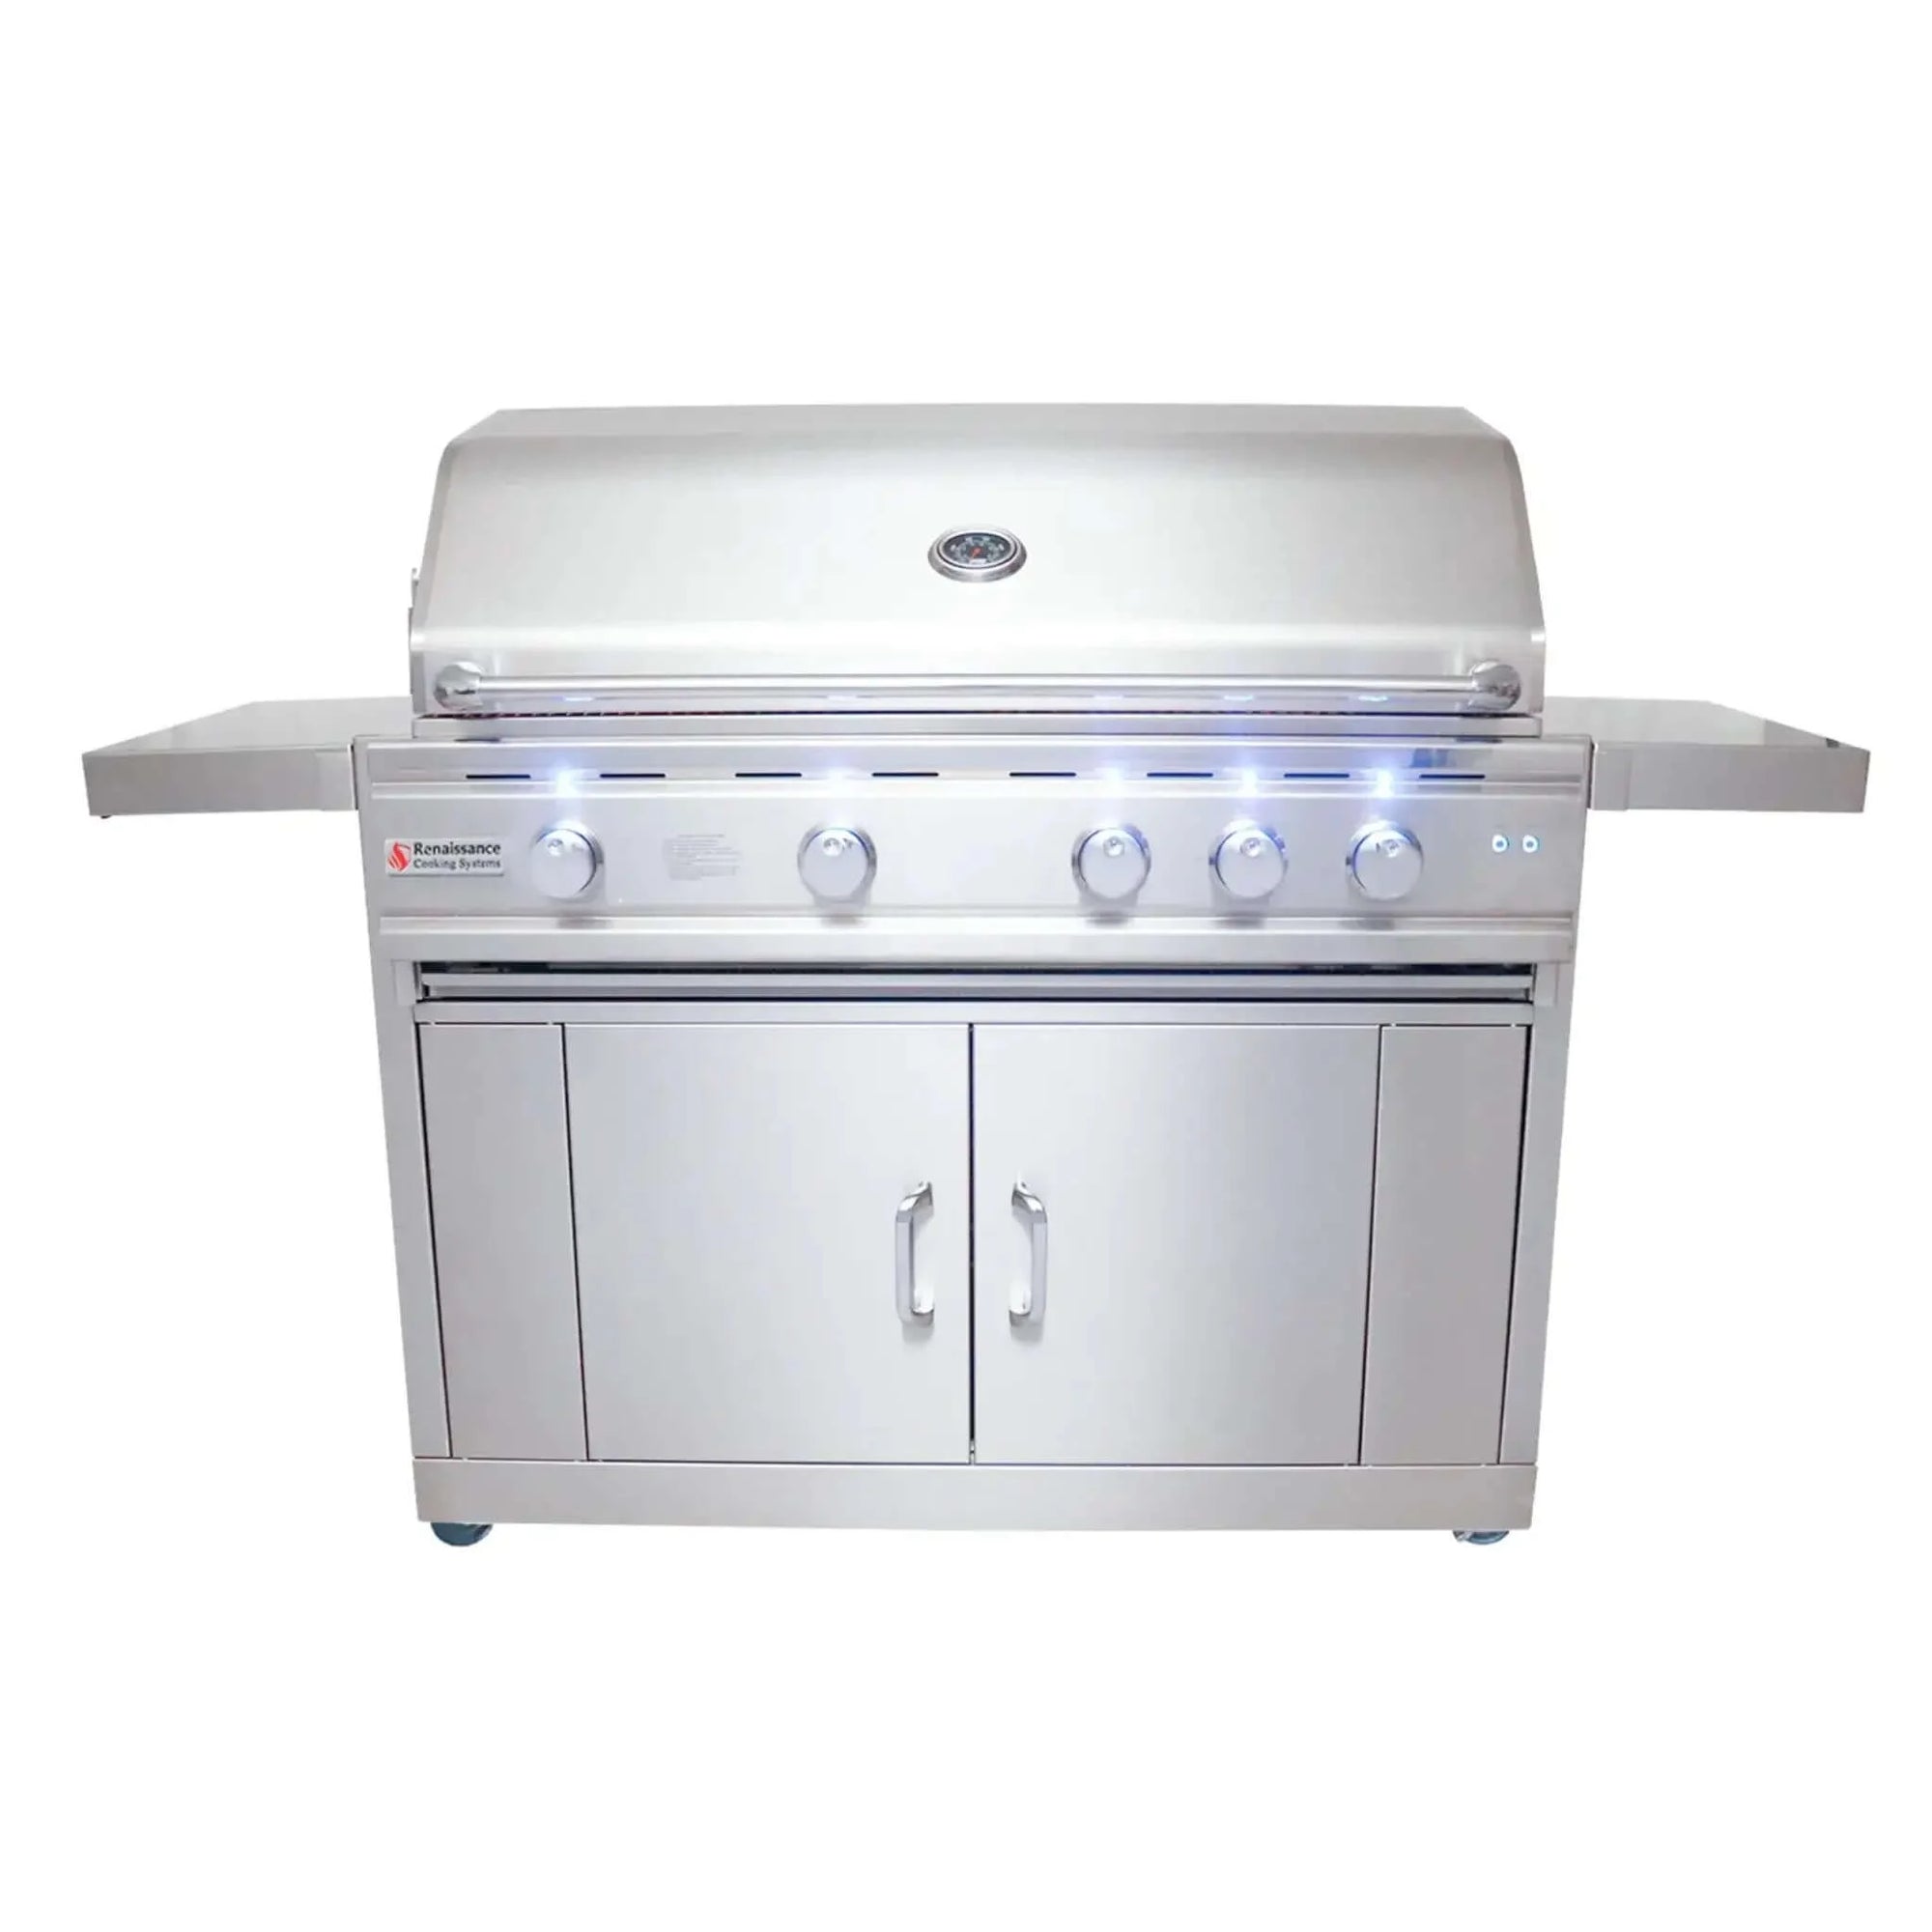 Renaissance Cooking Systems 42" Cutlass Pro Freestanding Grill-Natural Gas